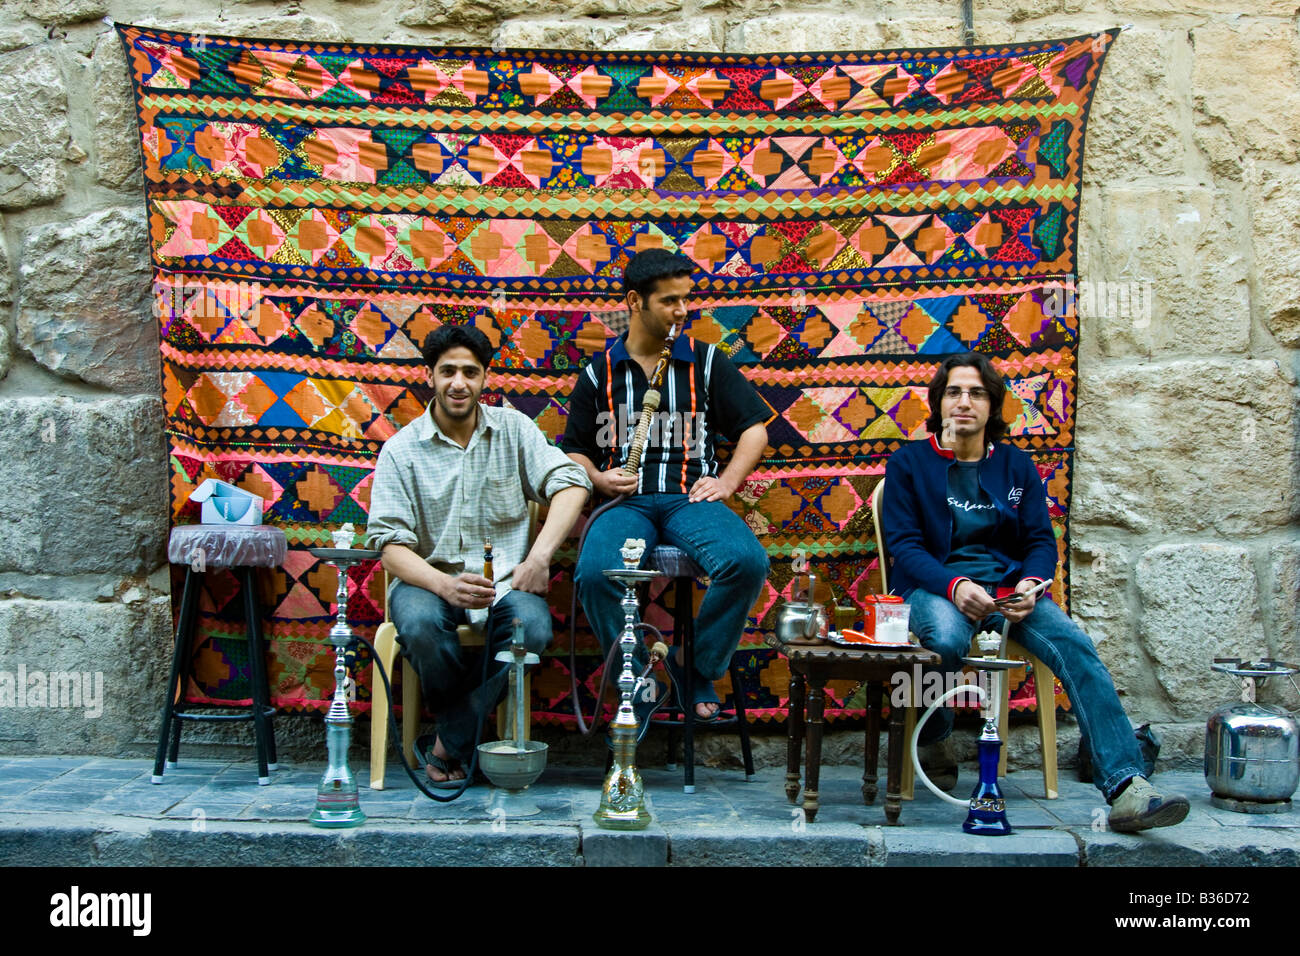 Les jeunes fumeurs hommes Syrie Nargilehs dans la vieille ville de Damas en Syrie Banque D'Images